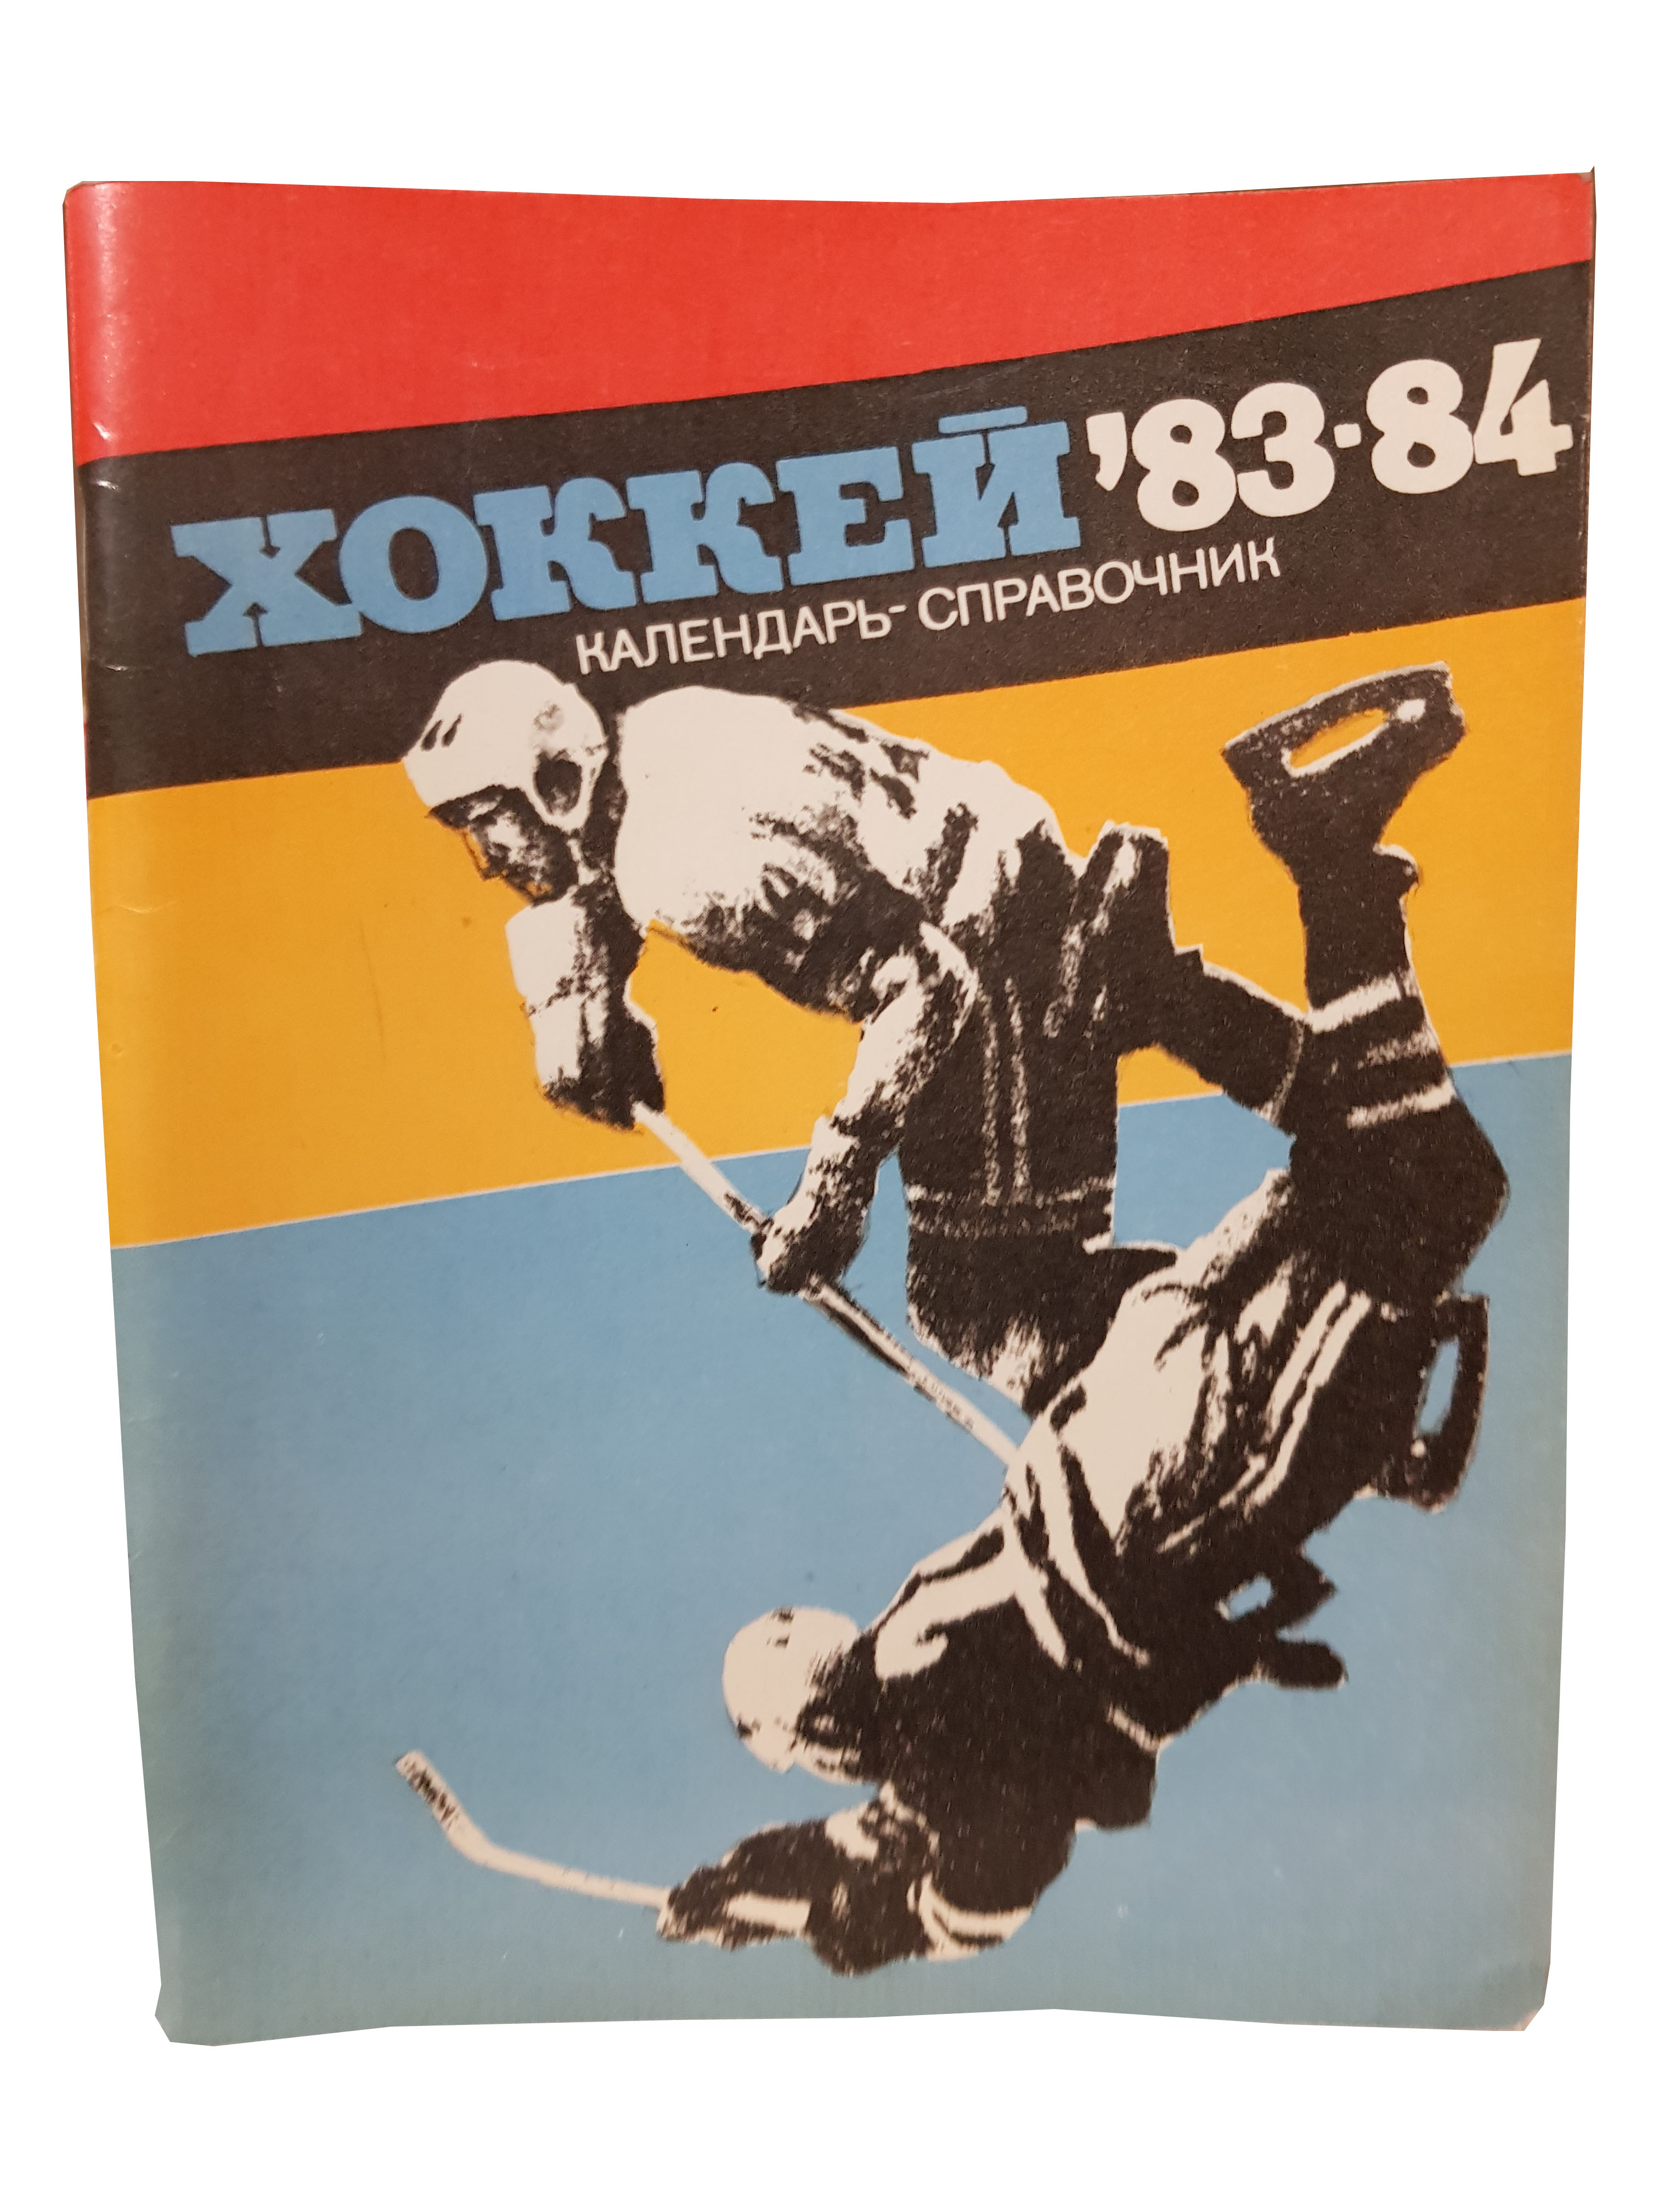 Календарь-справочник (Хоккей 83-84).jpg